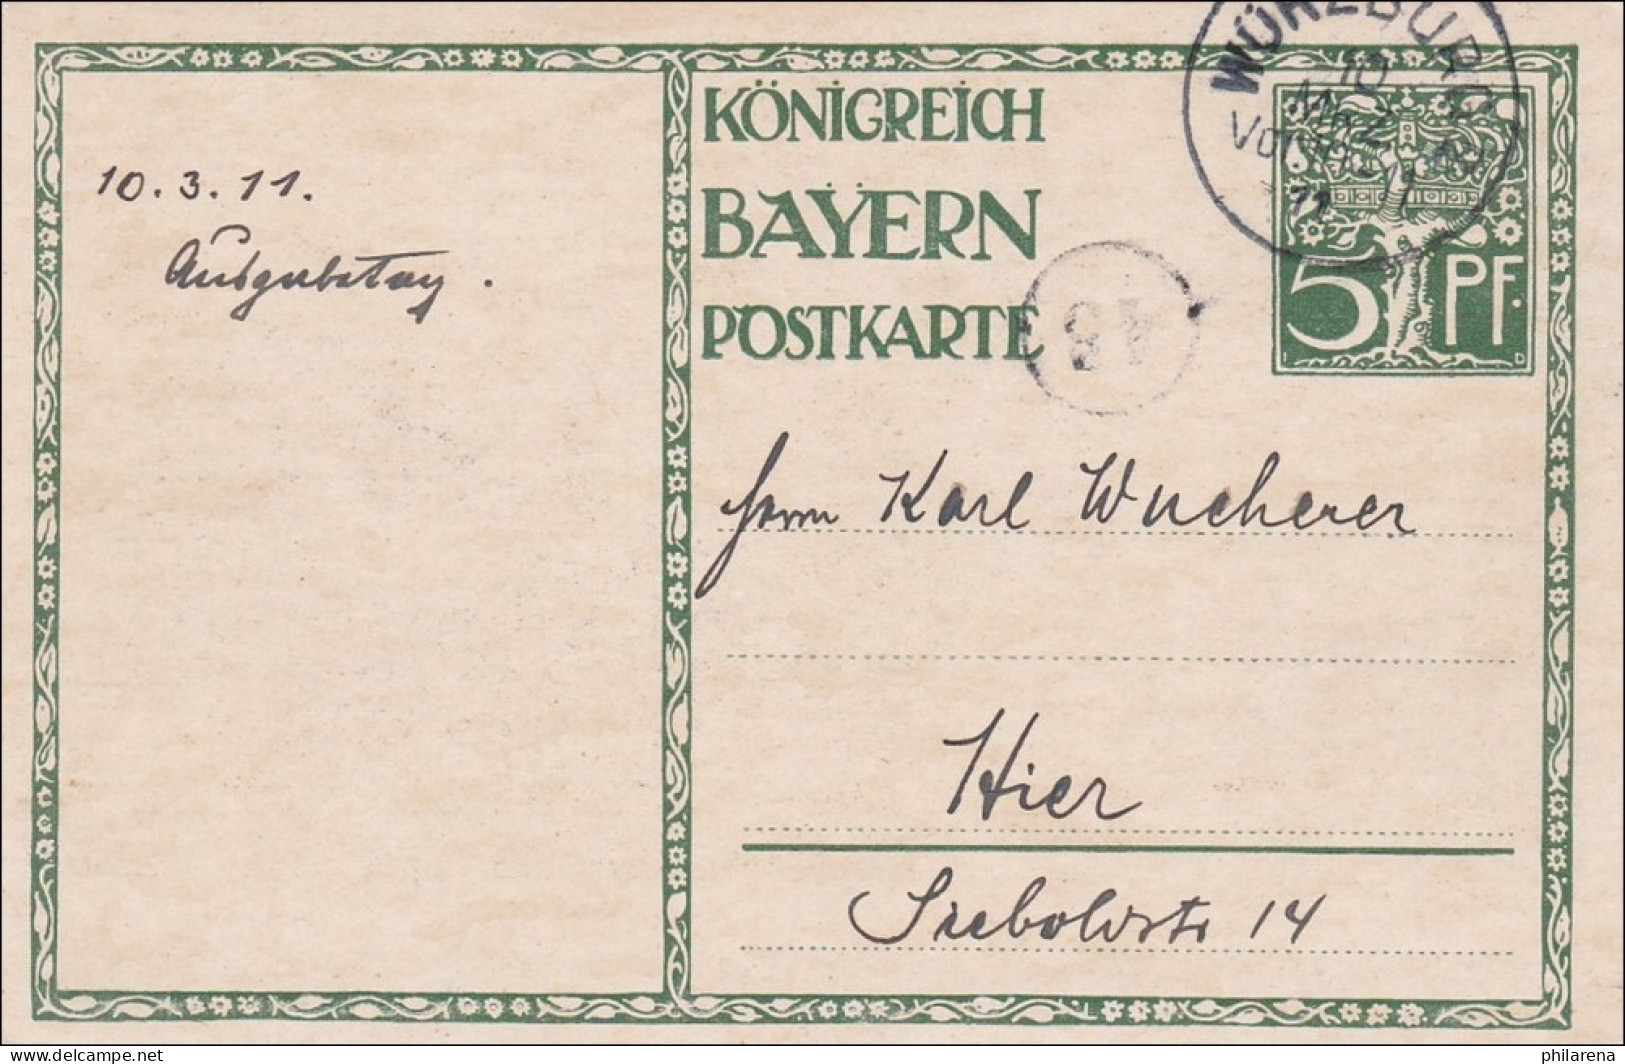 Bayern:  Ganzsache  1911 Innerhalb Von Würzburg - Covers & Documents